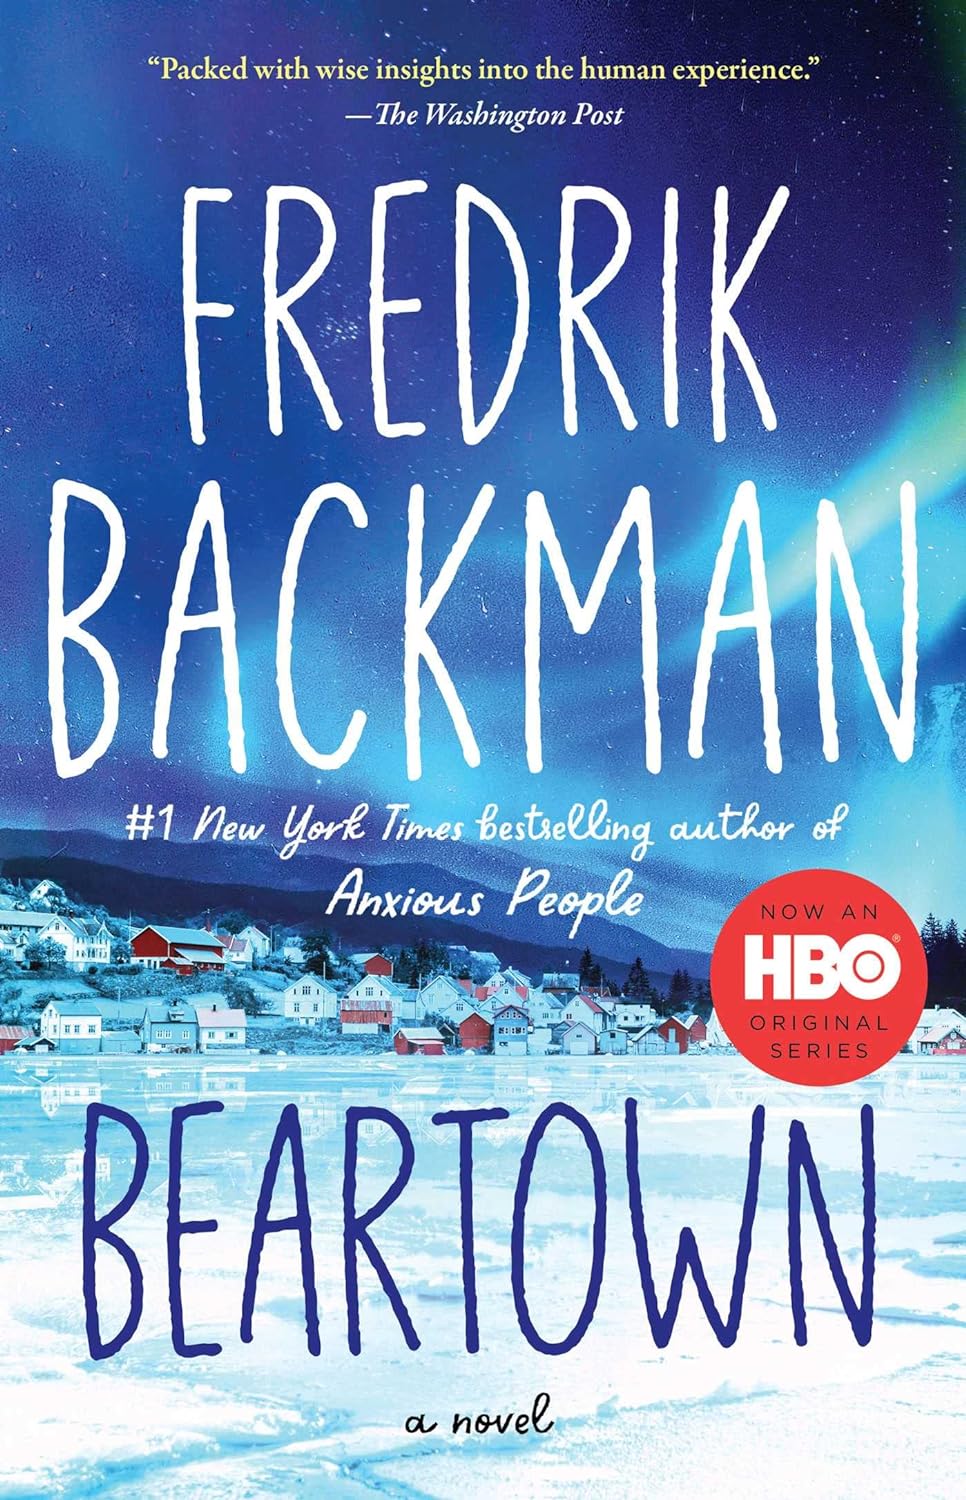 Best Fiction: Beartown